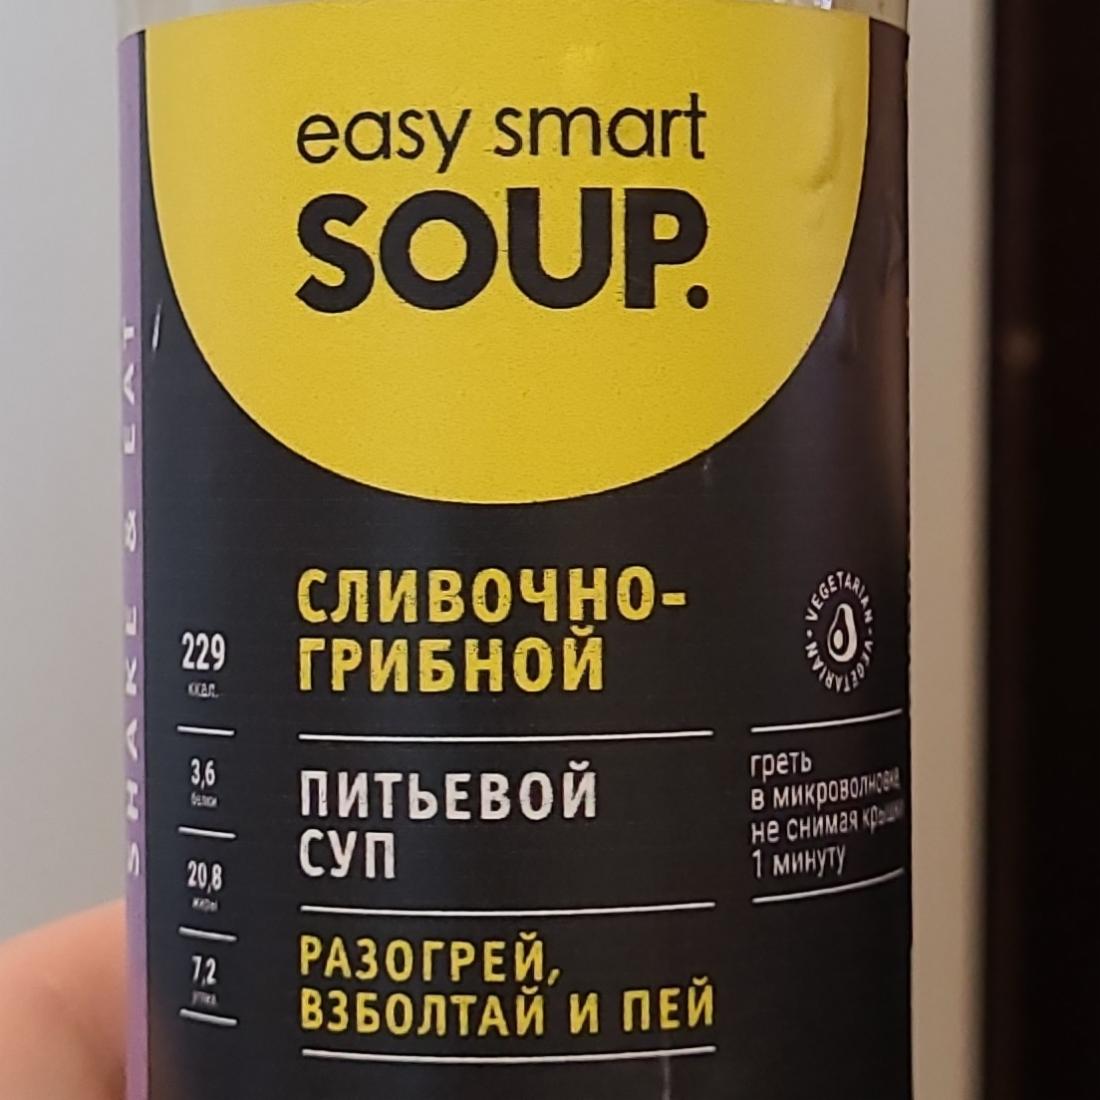 Фото - сливочно-грибной питьевой суп Easy smart